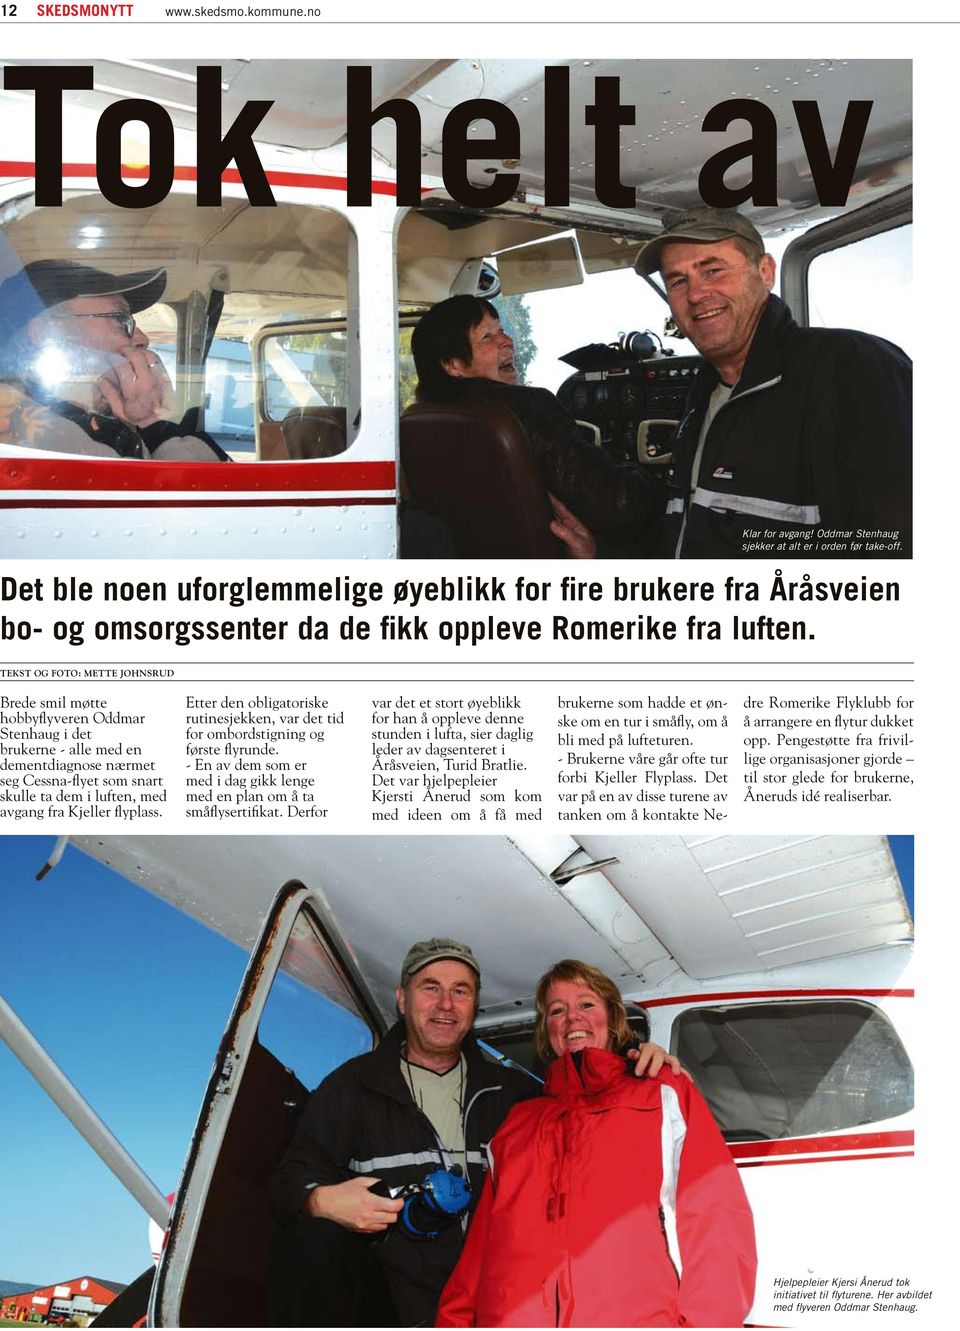 Brede smil møtte hobbyflyveren Oddmar Stenhaug i det brukerne - alle med en dementdiagnose nærmet seg Cessna-flyet som snart skulle ta dem i luften, med avgang fra Kjeller flyplass.